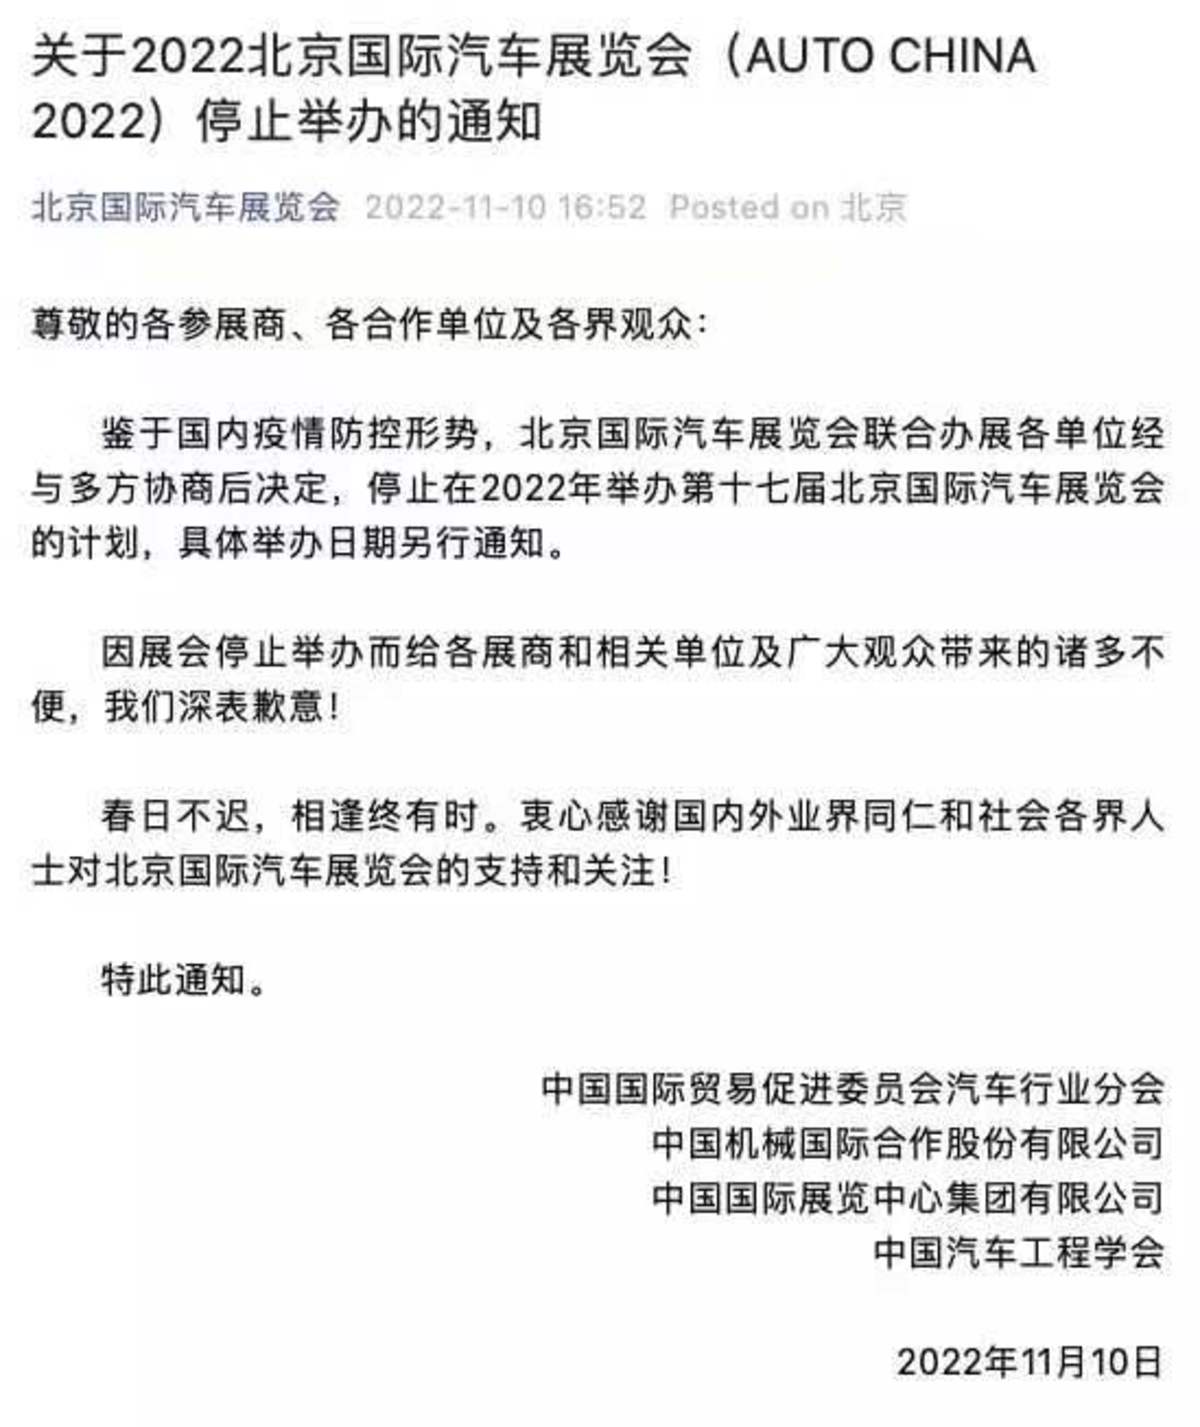 受疫情影响 2022北京国际车展停止举办